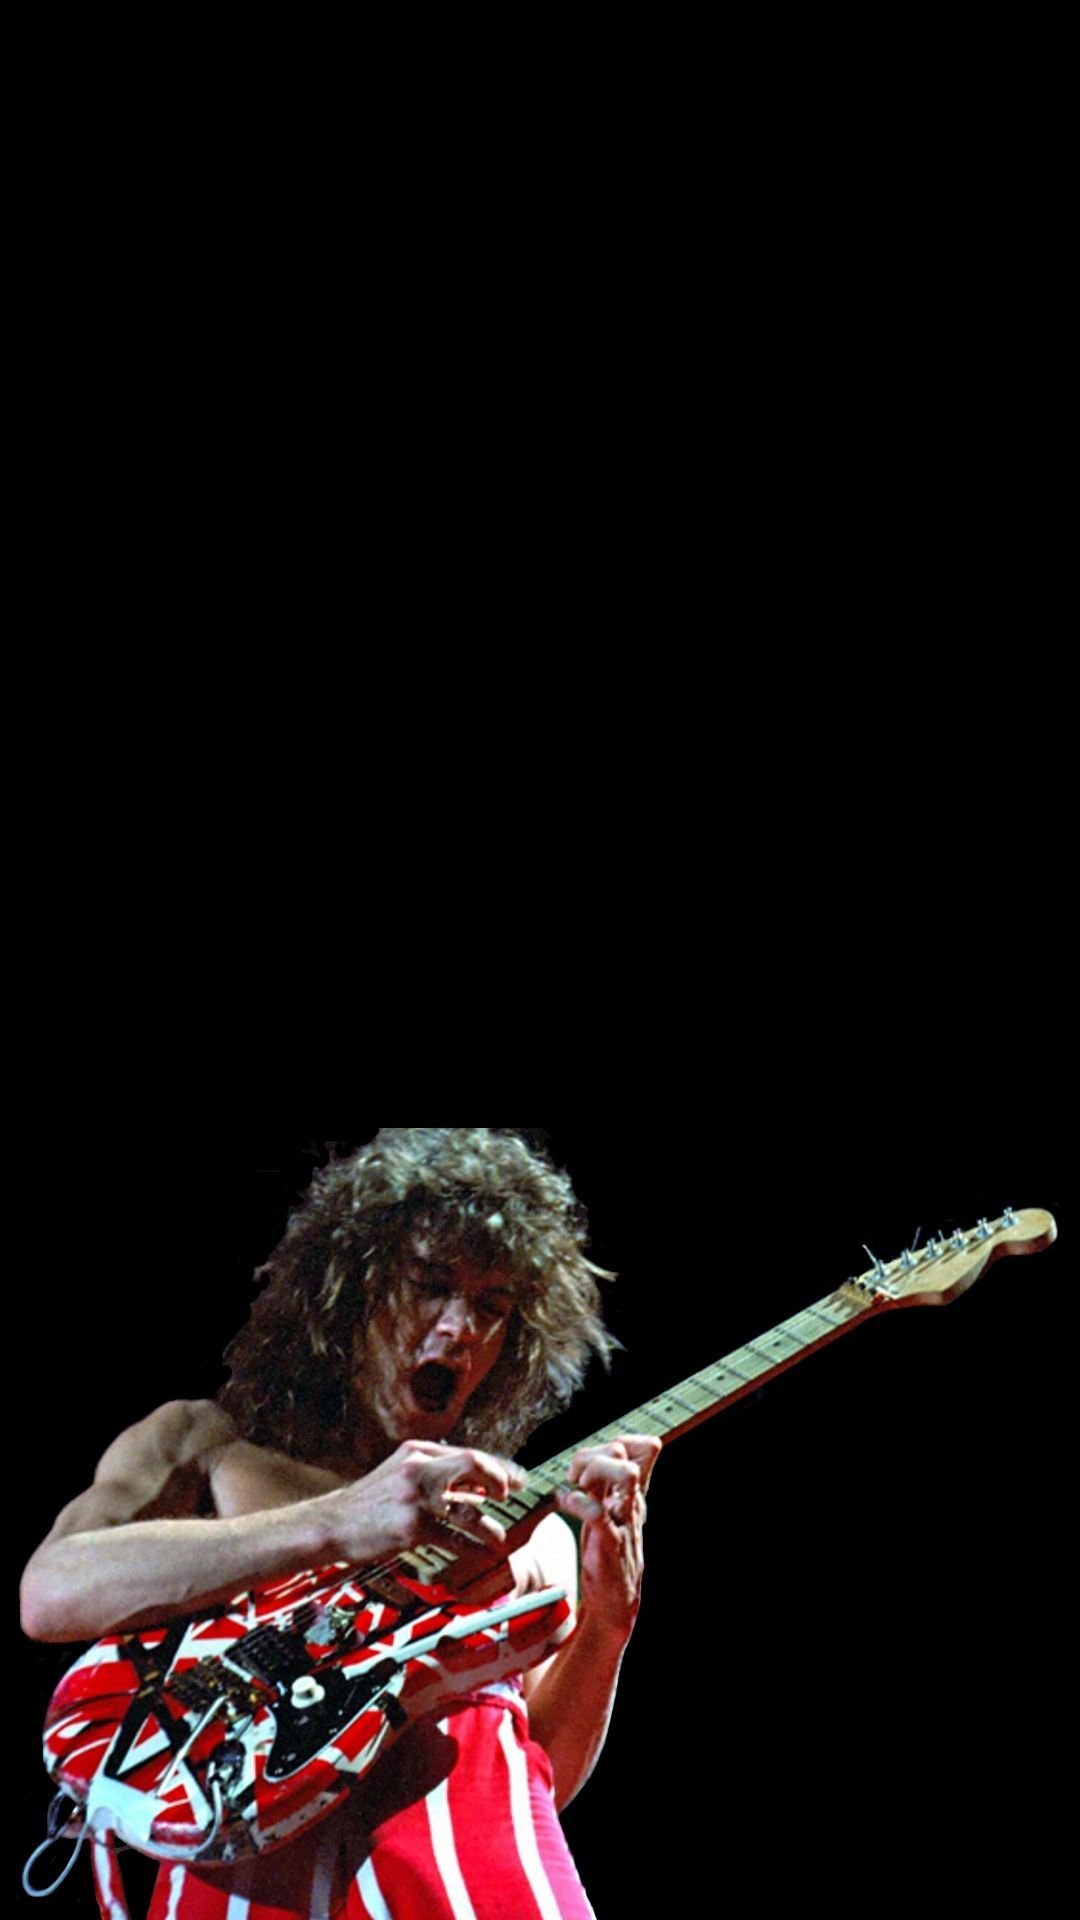 Van Halen. Van halen, Eddie van halen, Music album cover